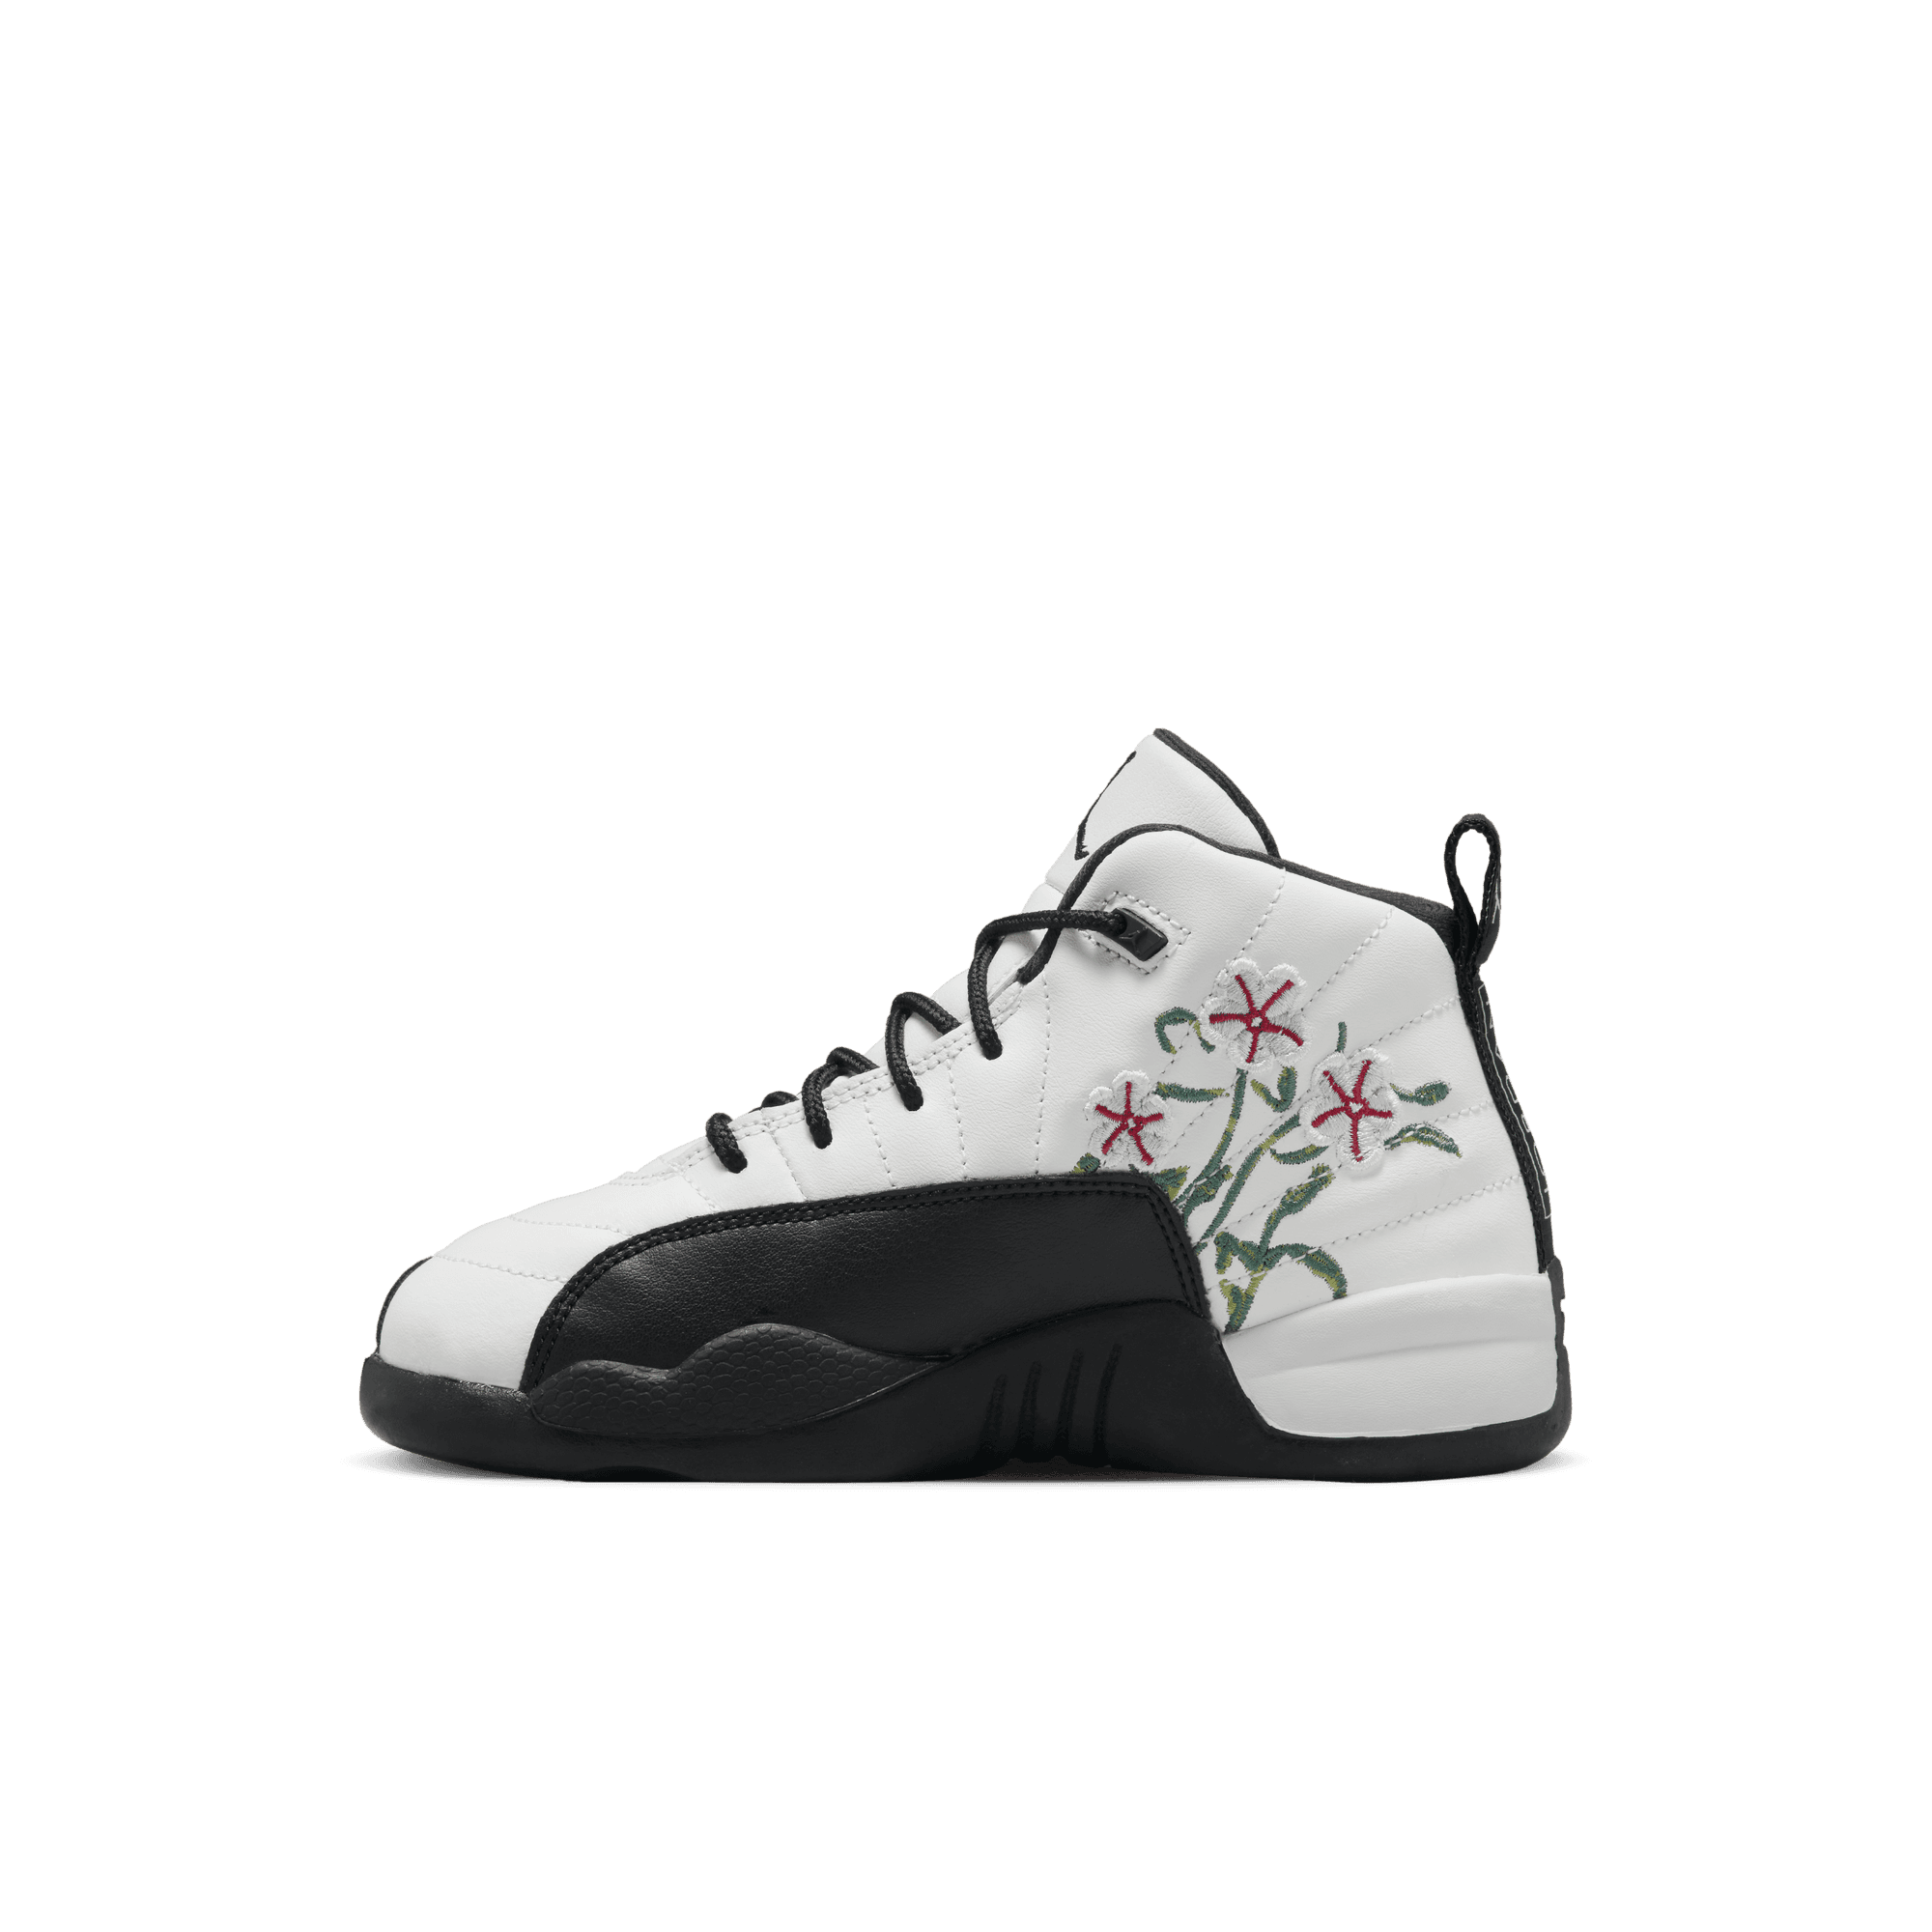 Nike Air Jordan 12 Retro (PS)